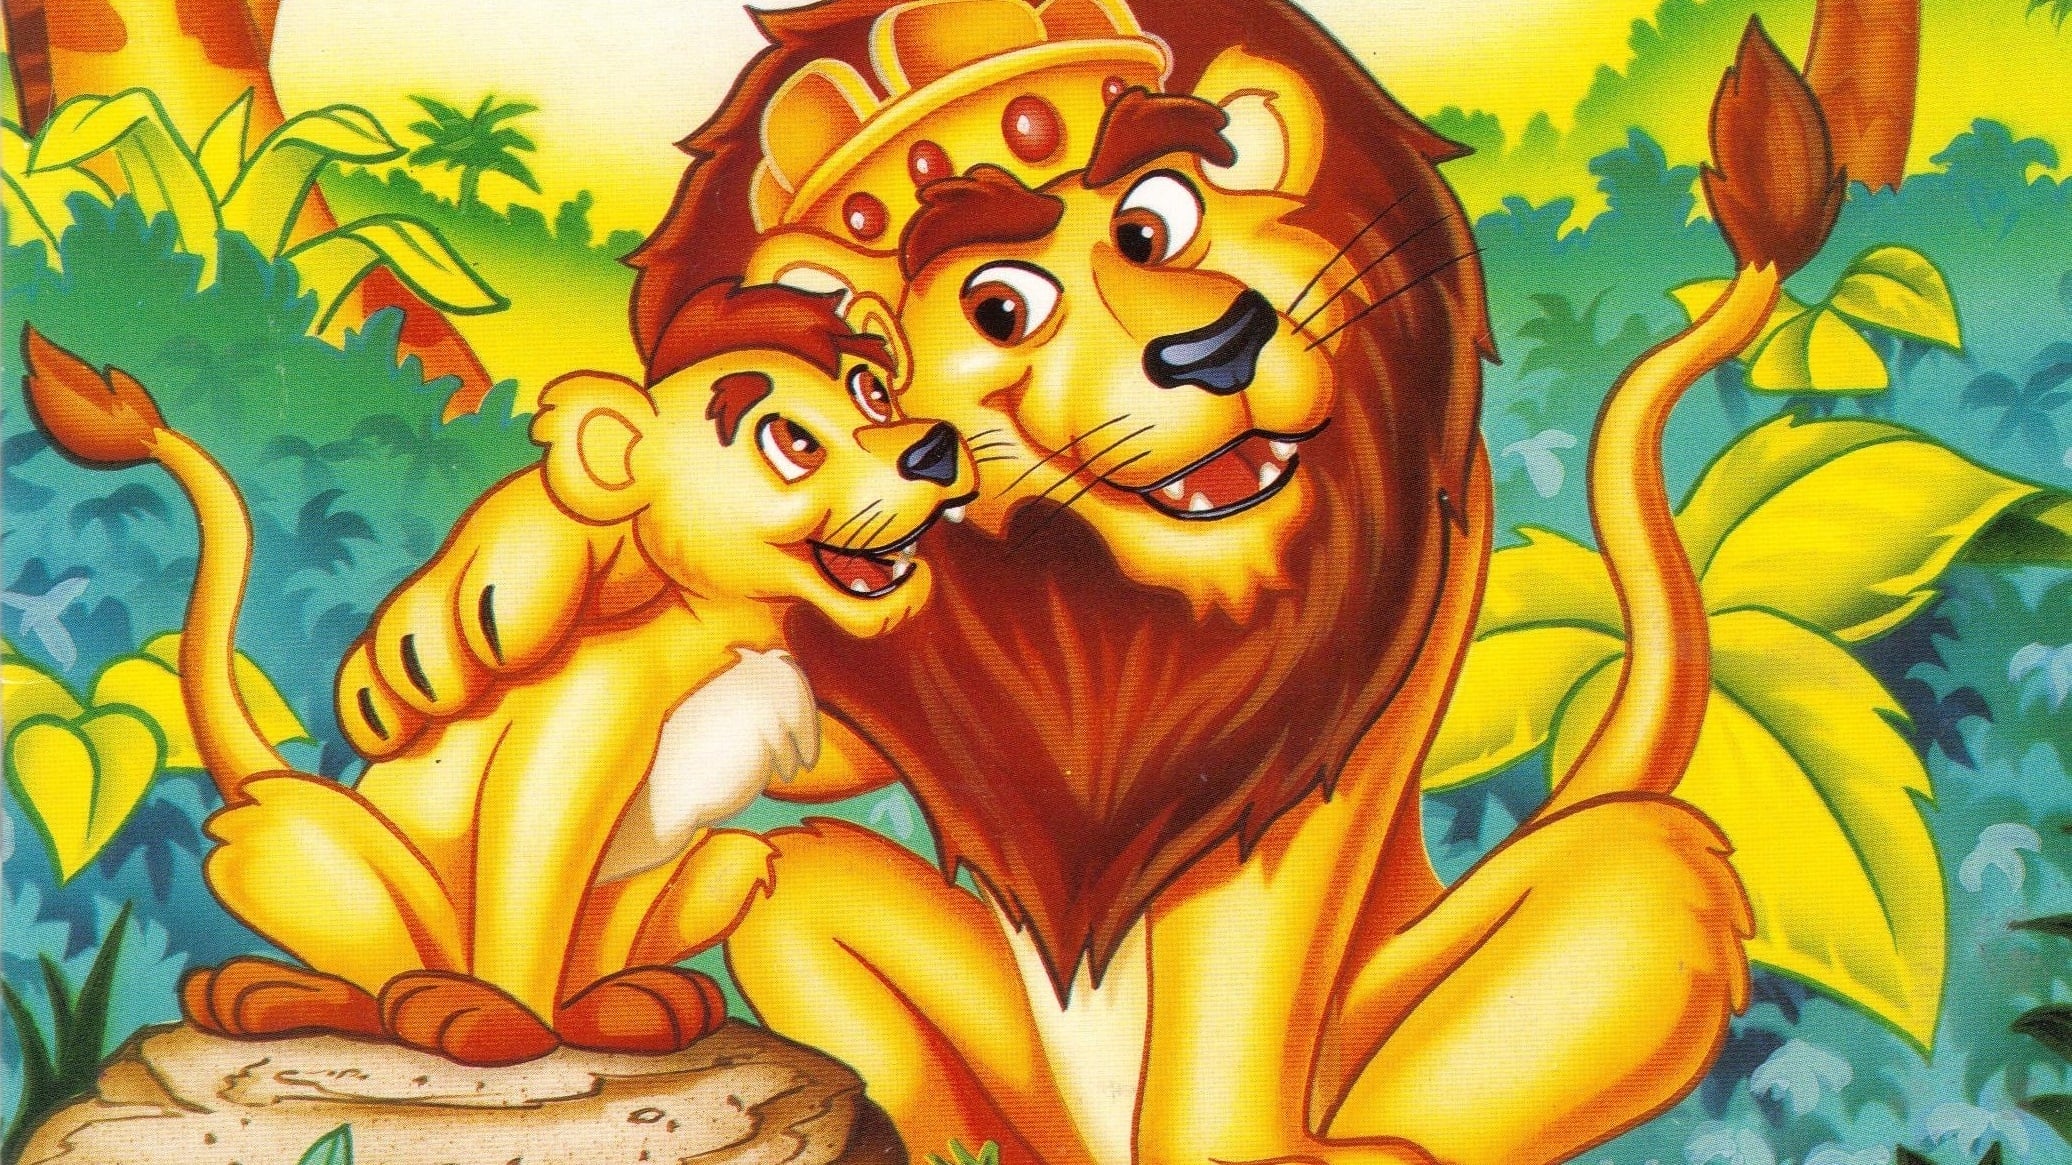 Leo il leone - Re della giungla